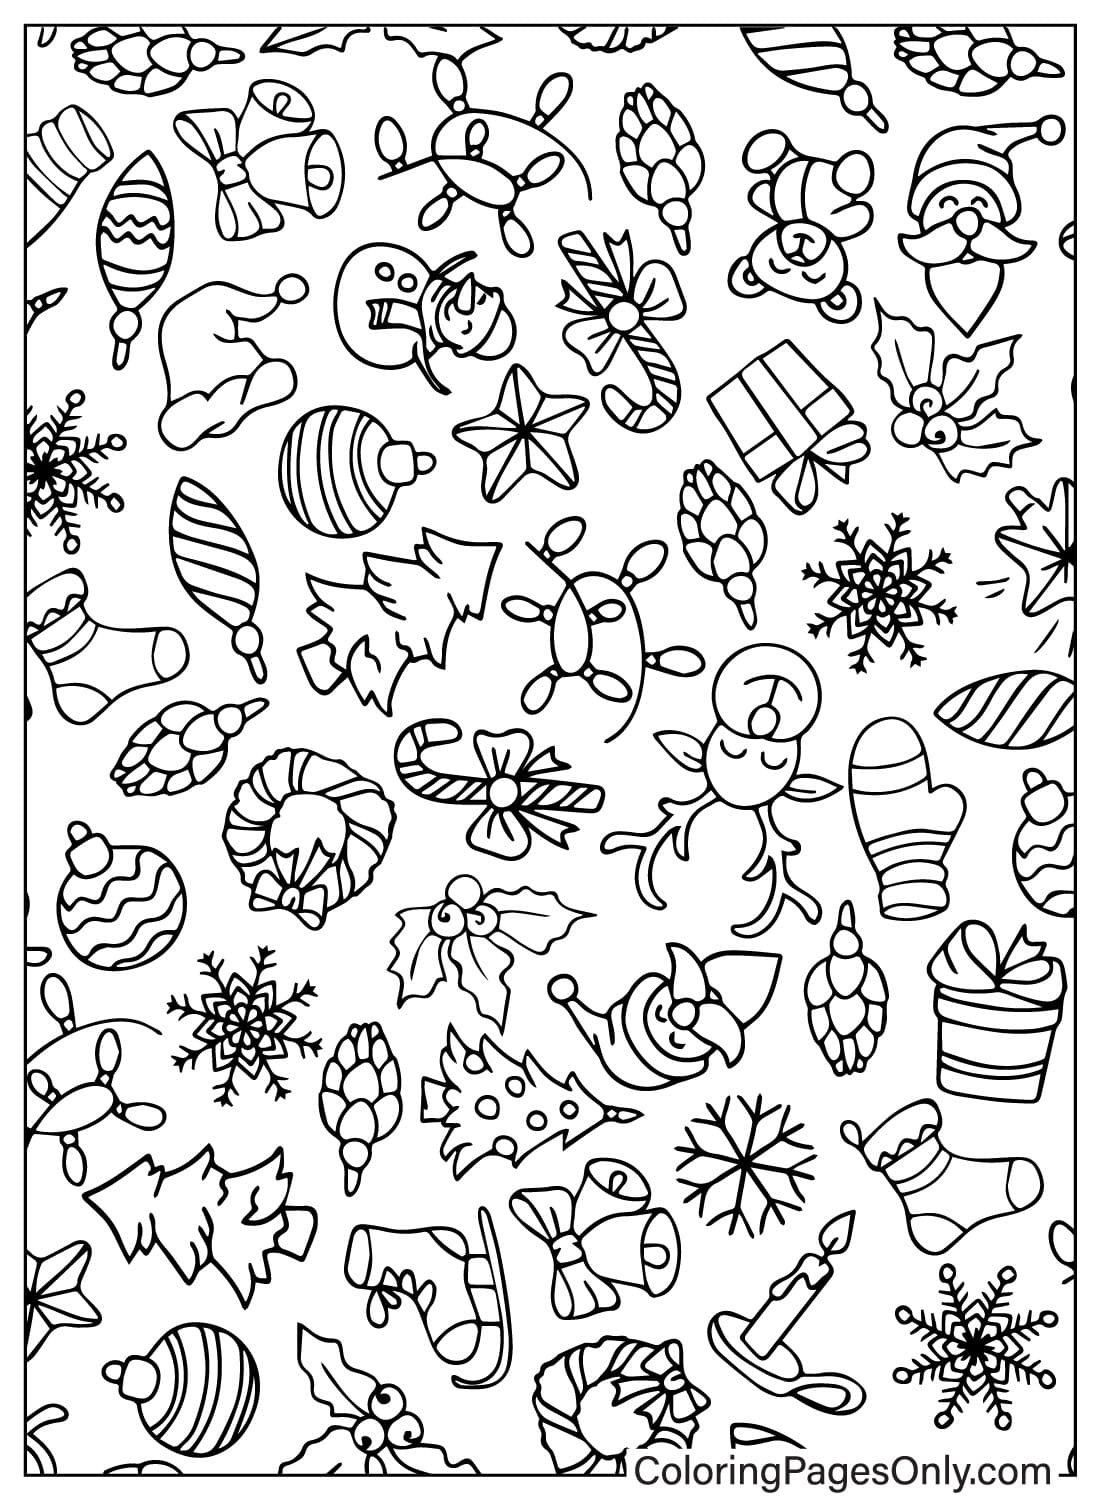 Página para colorear de patrón navideño gratis de Patrón navideño